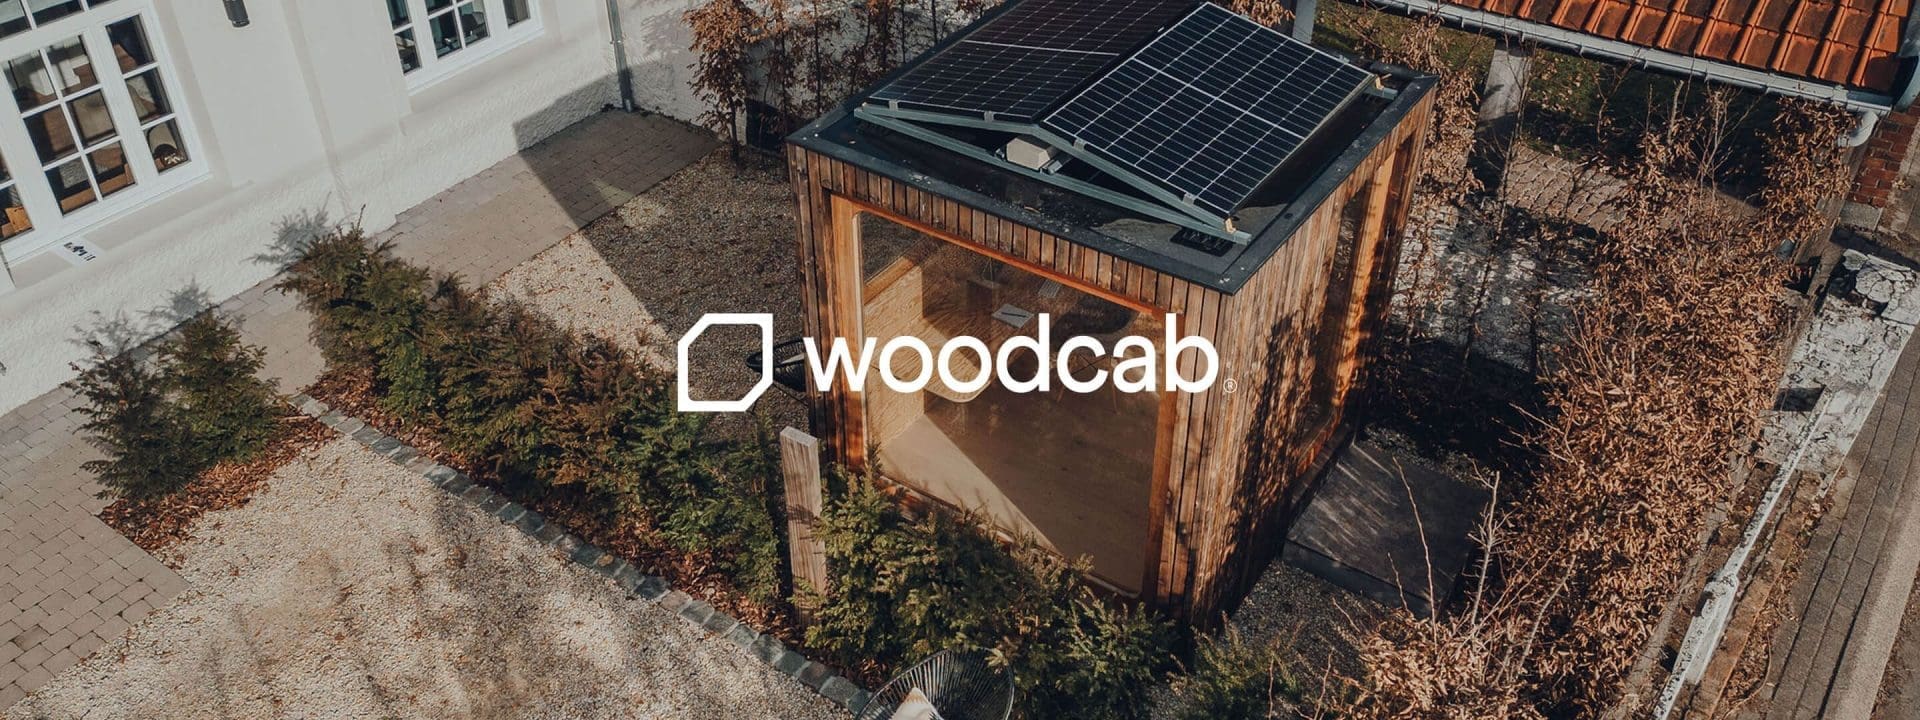 Woodcab est une start-up belge qui propose des constructions modulaires et durables